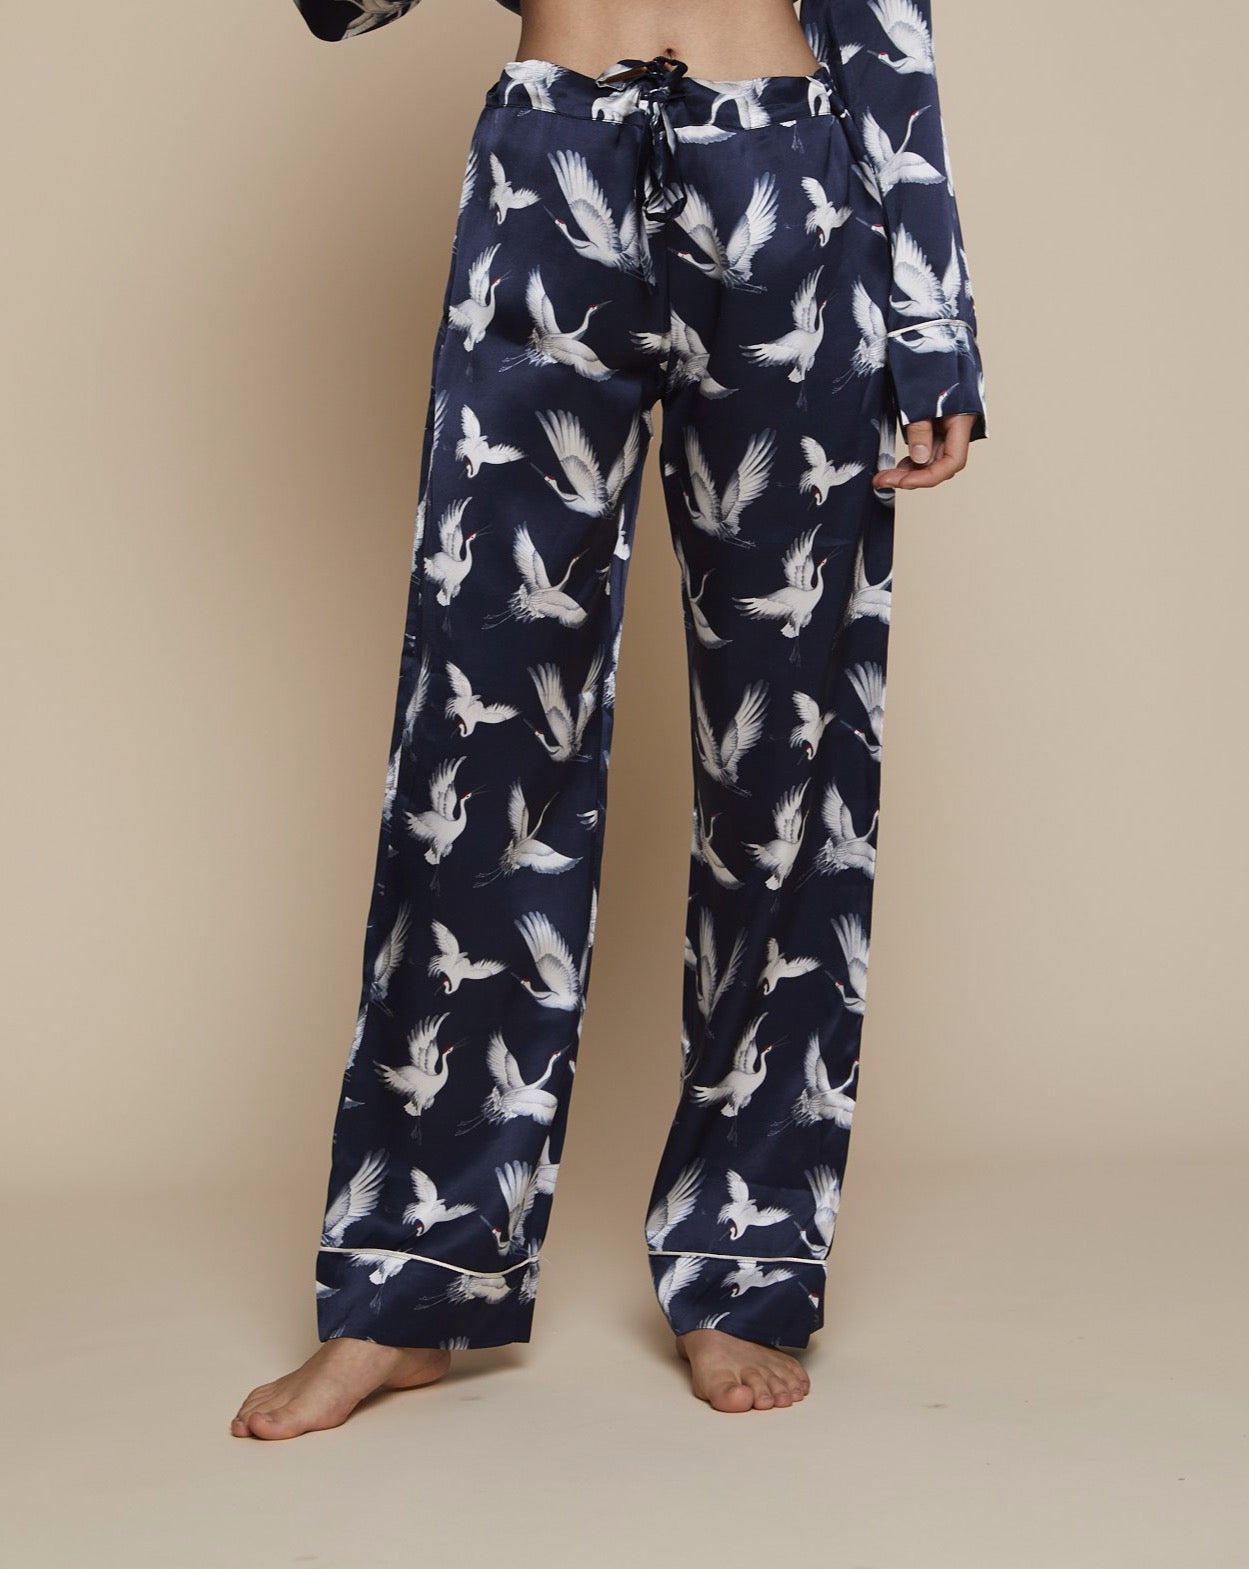 Elisabetha in Aves - Loungewear Bottom, Pyjama, Silk Pyjama, Nightwear | RADICE